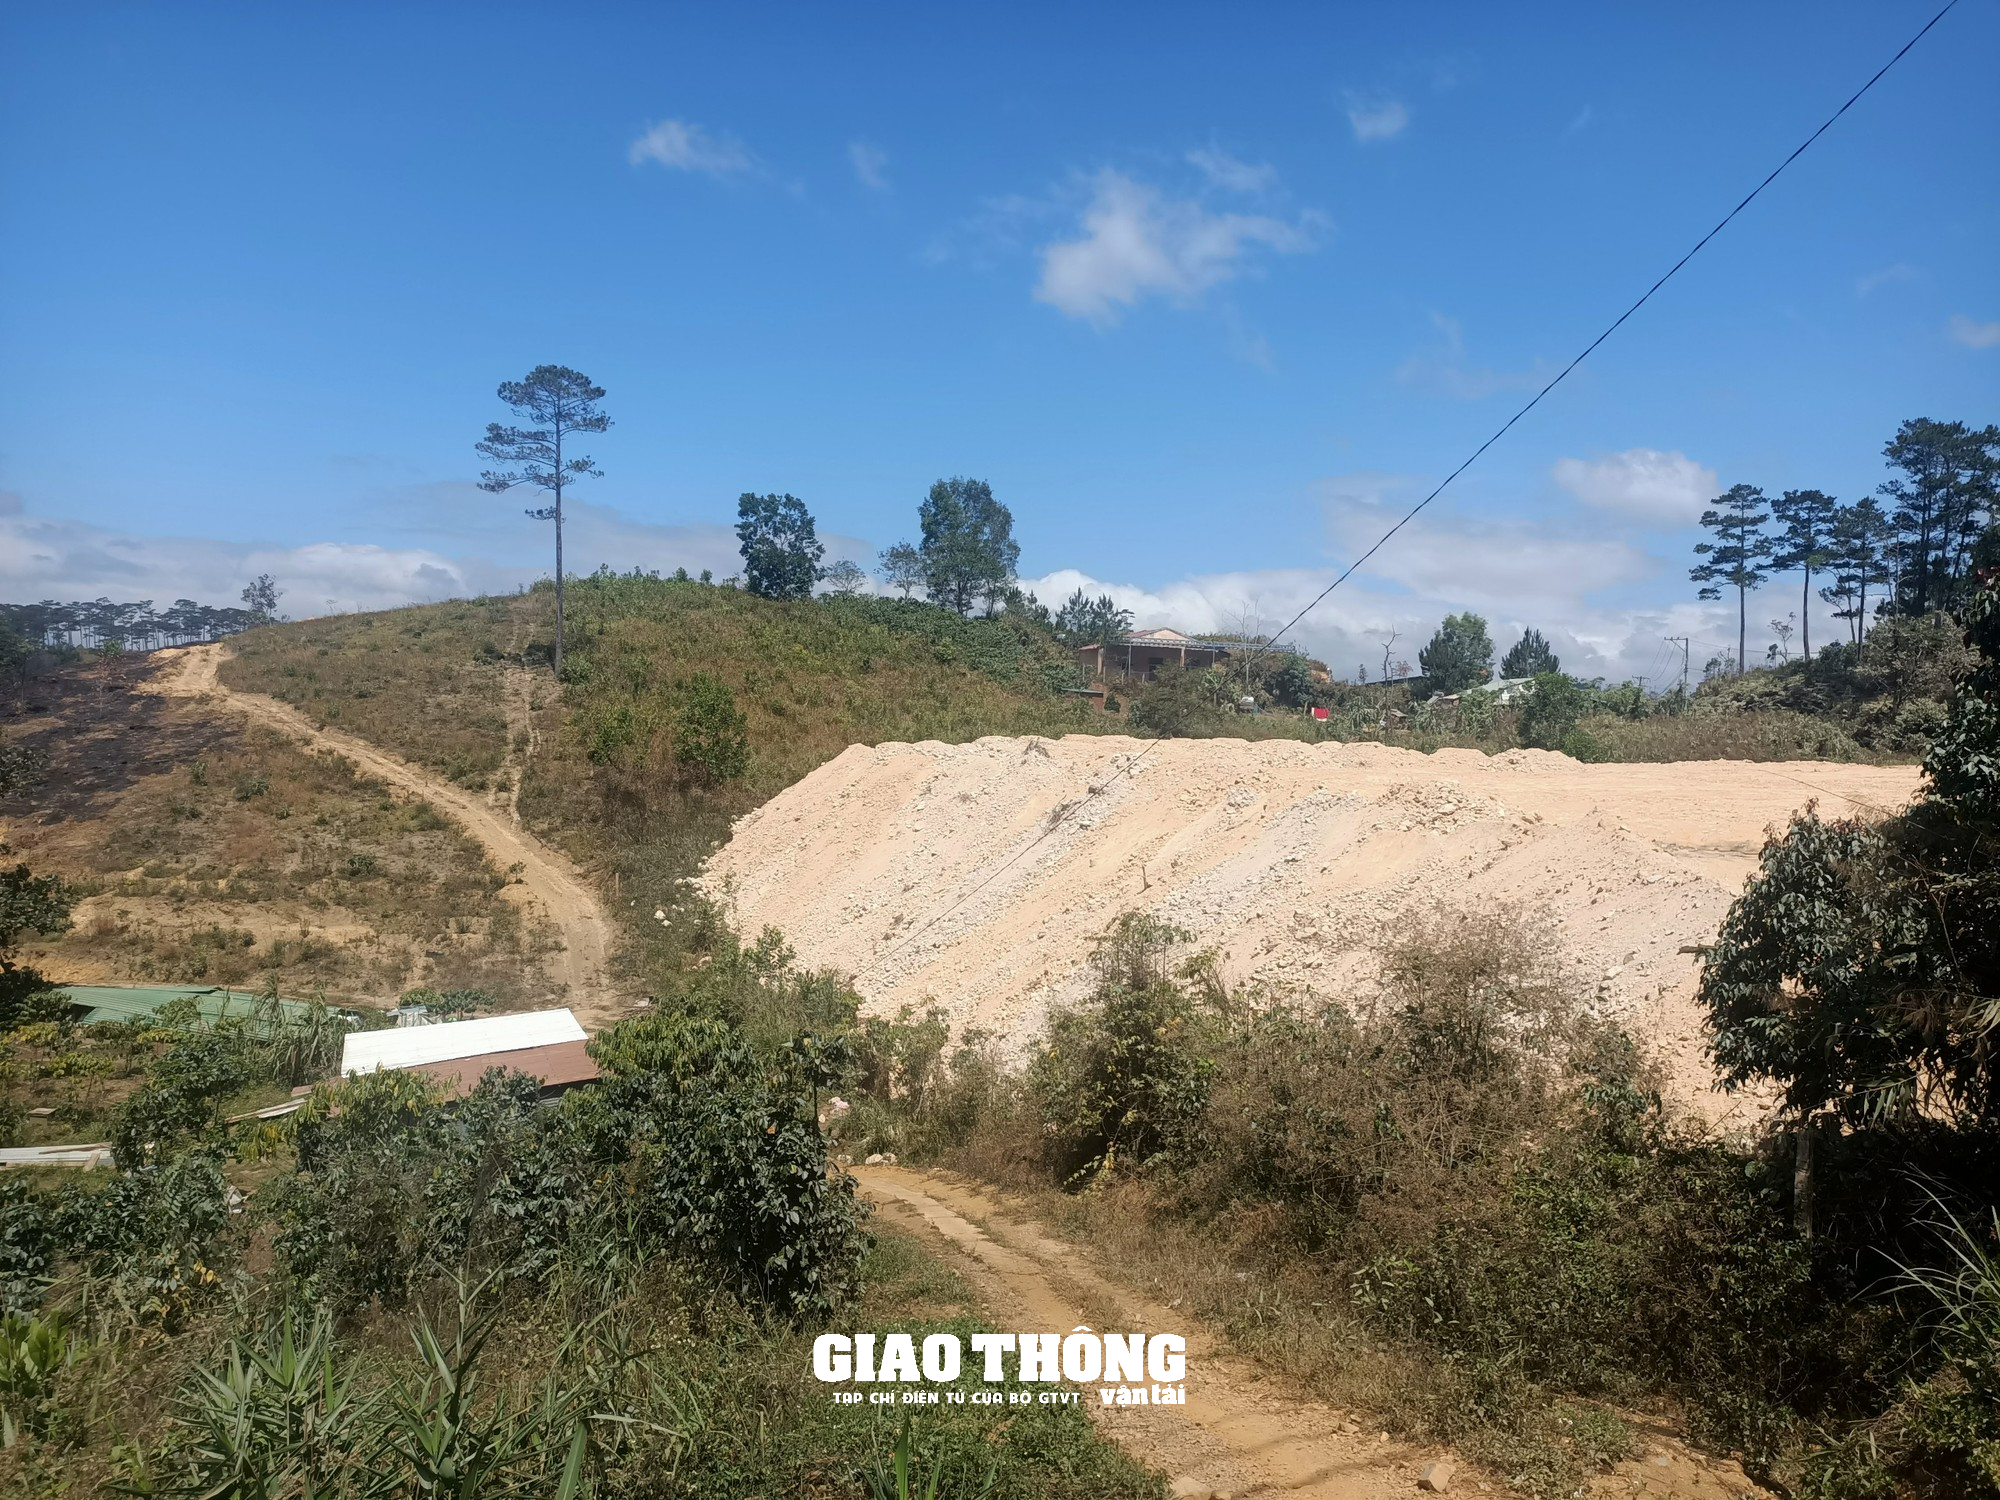 Nhức nhối nạn đào, san lấp mặt bằng xâm phạm hành lang tuyến QL27, ĐT724 ở Lâm Đồng - Ảnh 22.